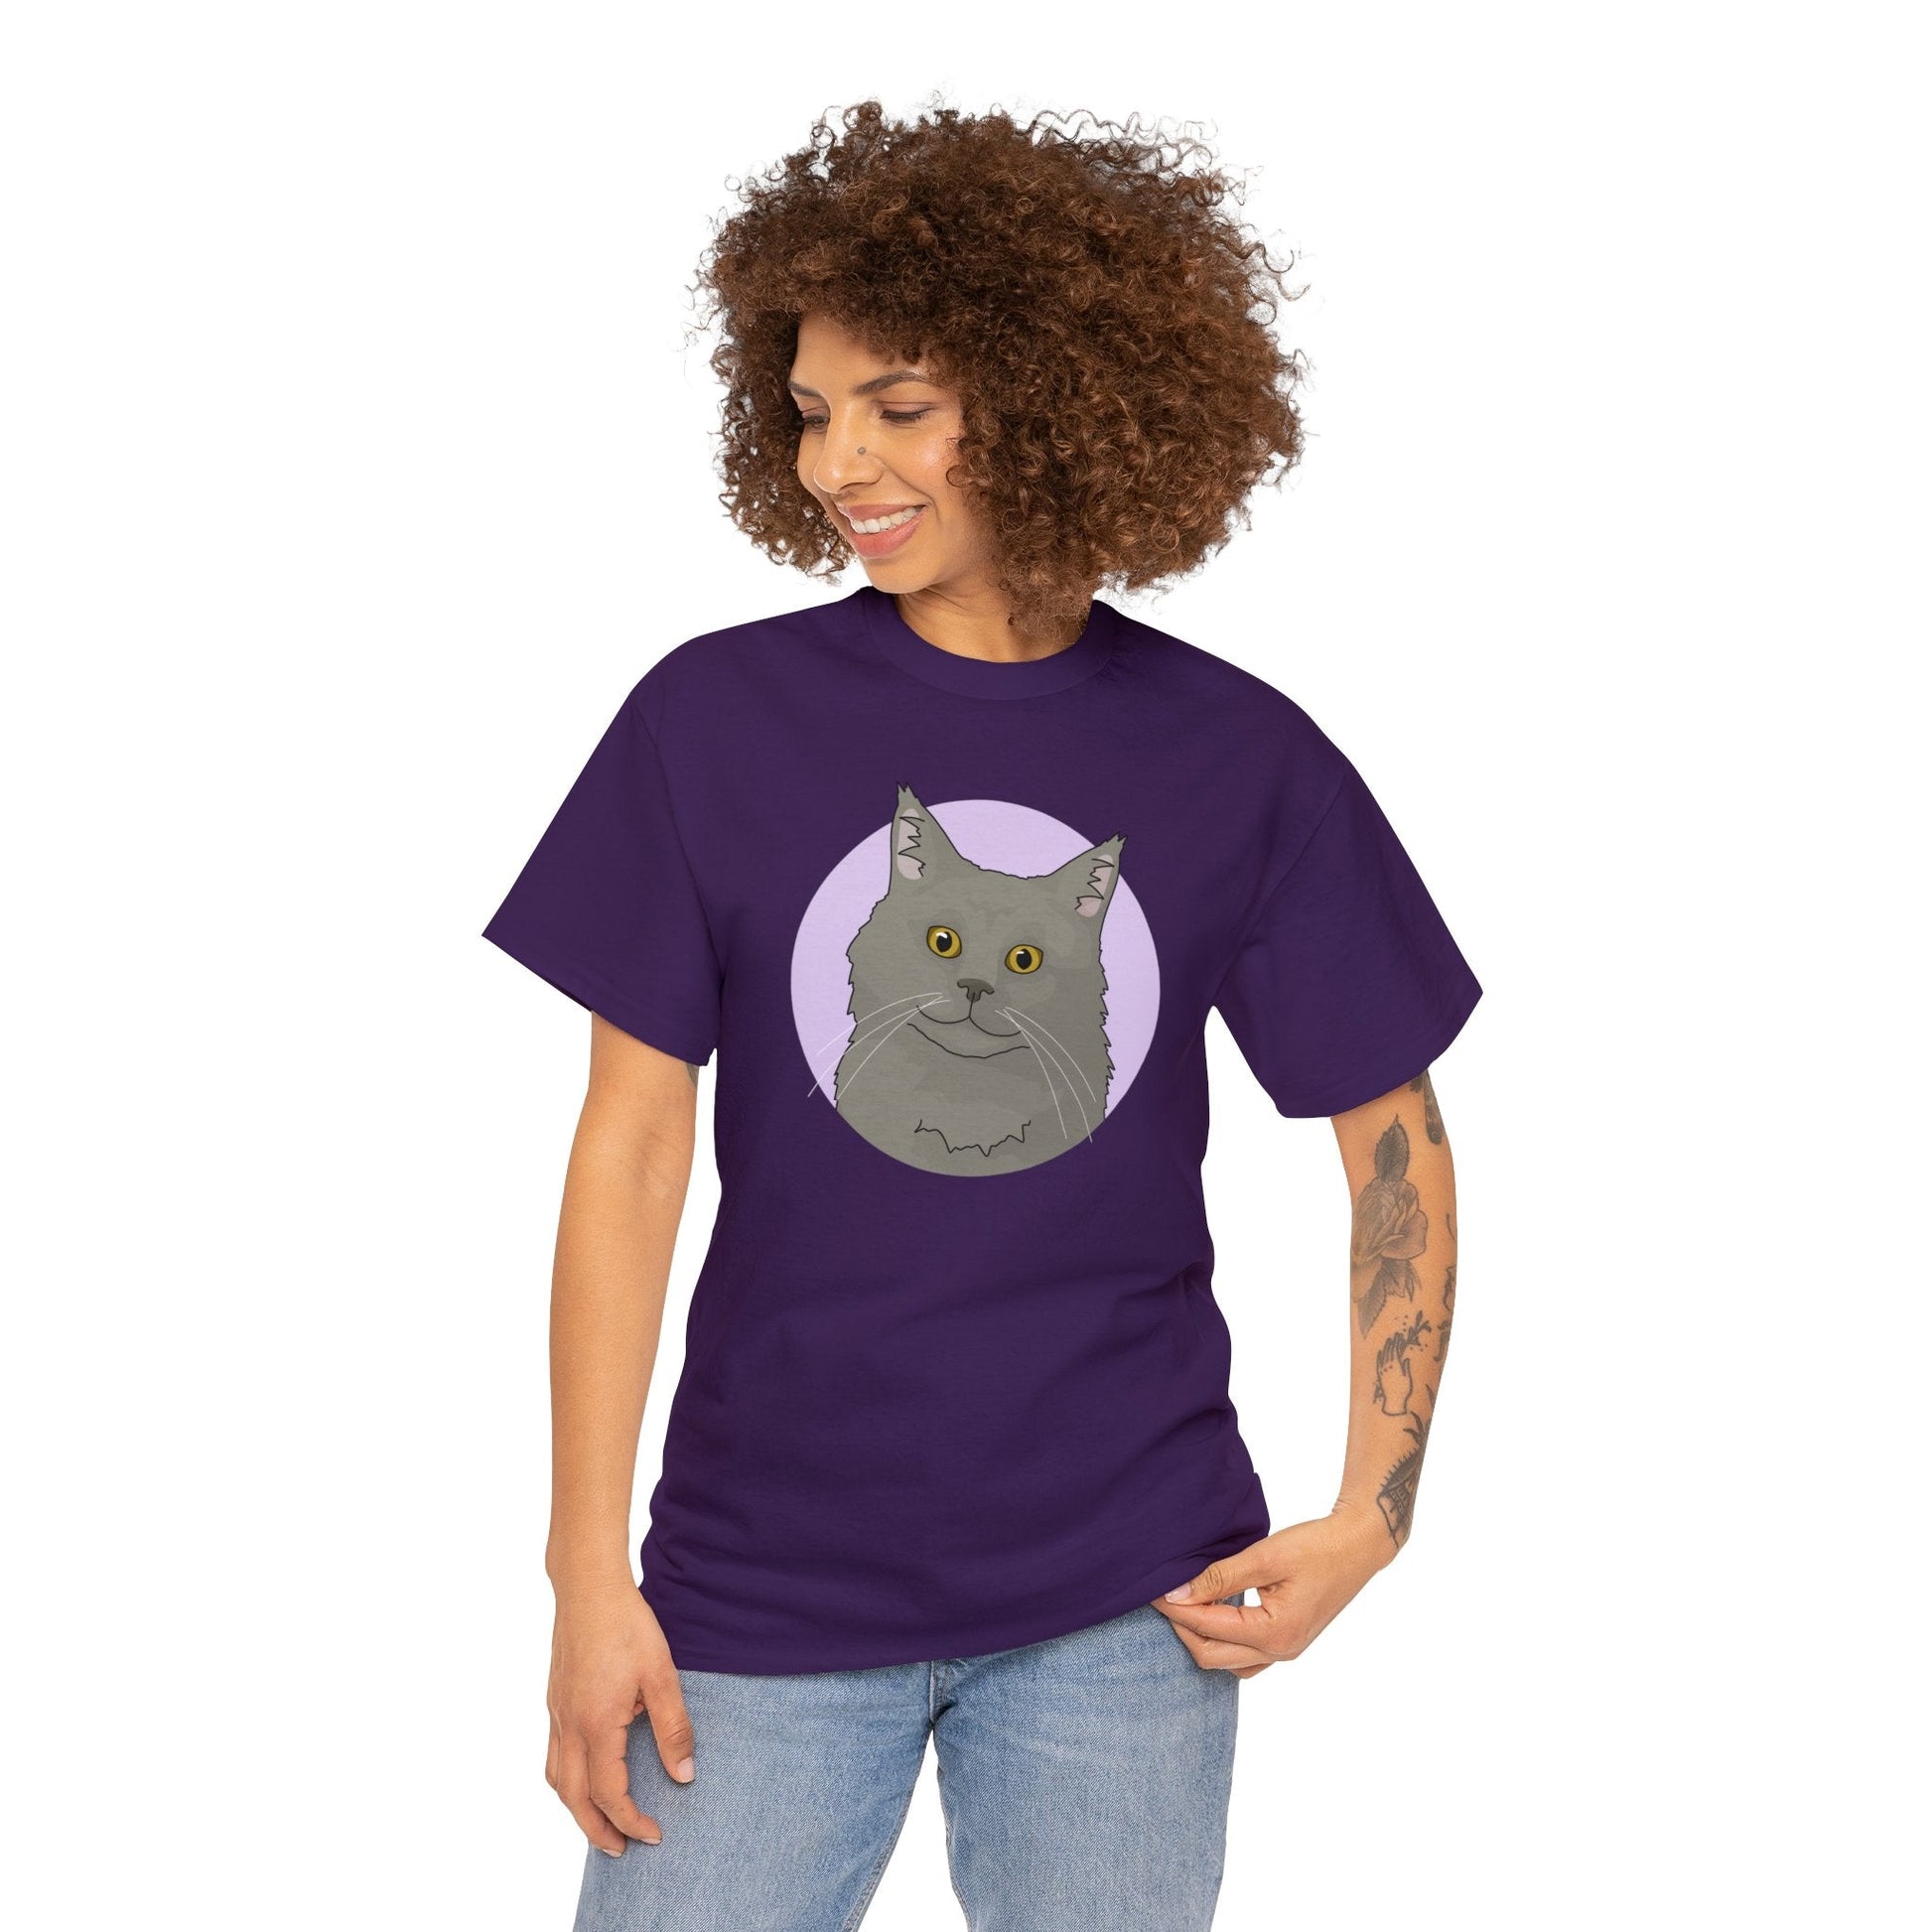 Maine Coon | T-shirt - Detezi Designs-26743564966463454023